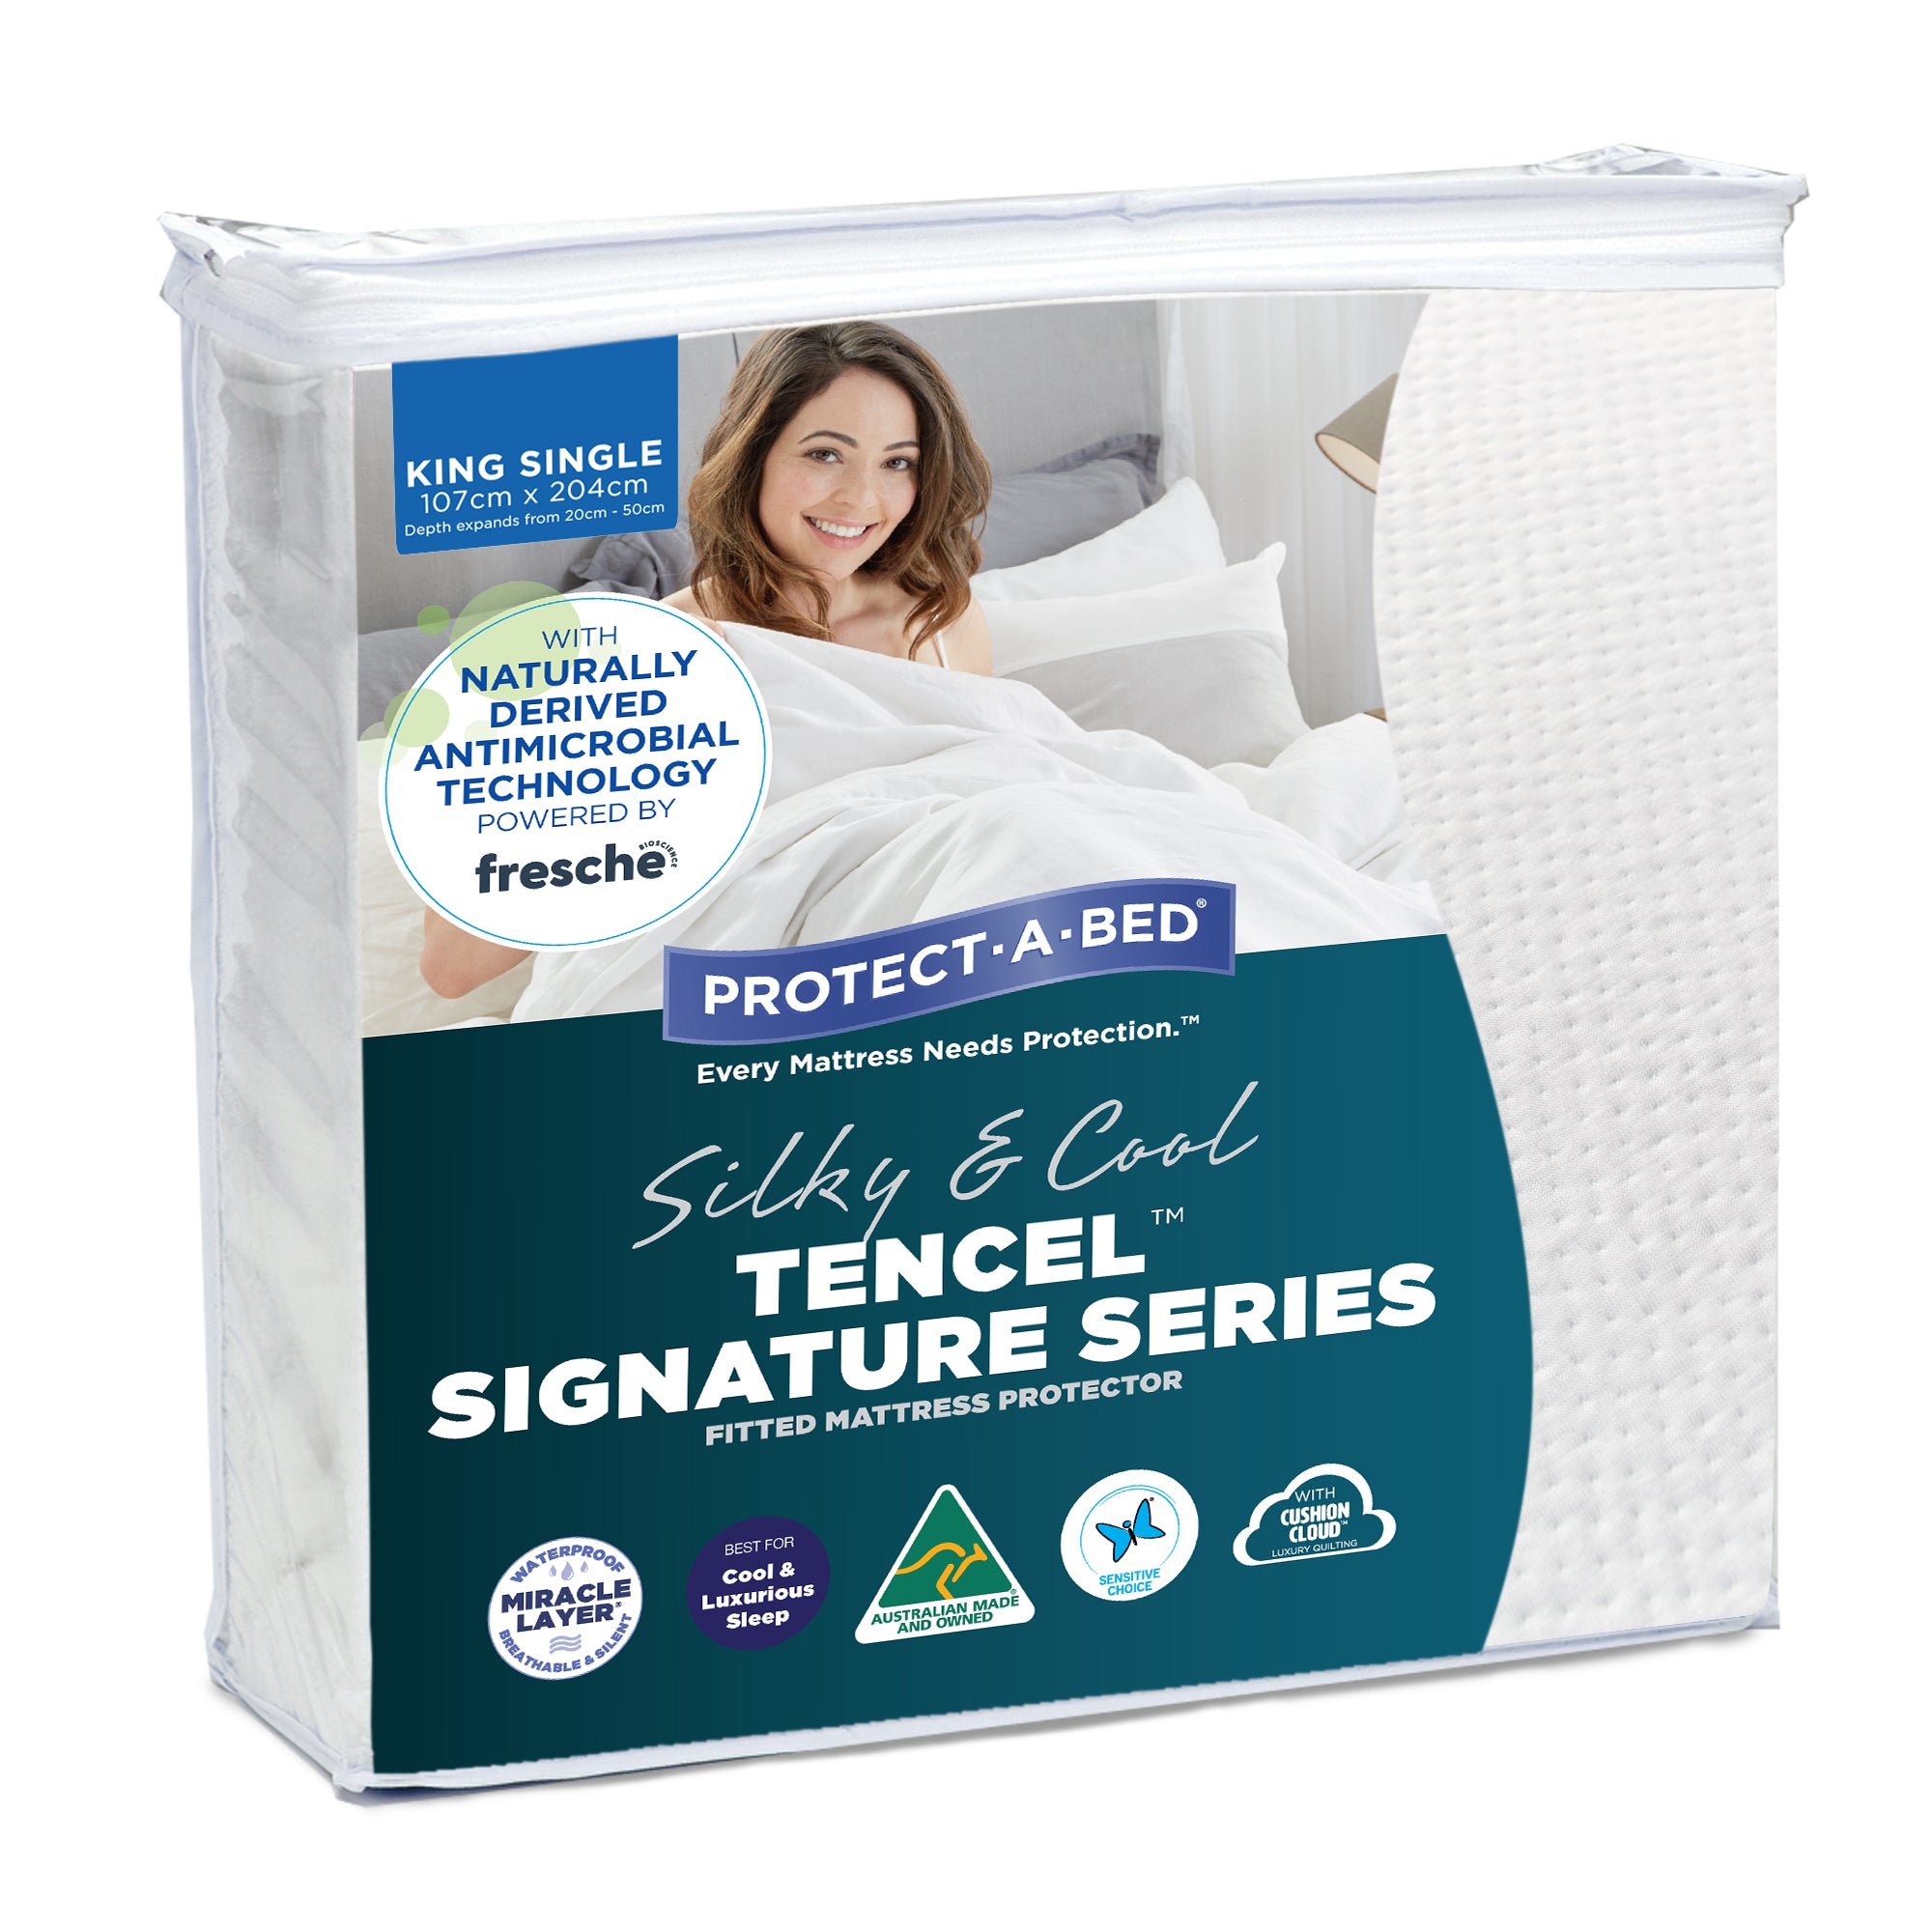 TENCEL™ Signature Series Mattress Protectors - Protect-A-Bed